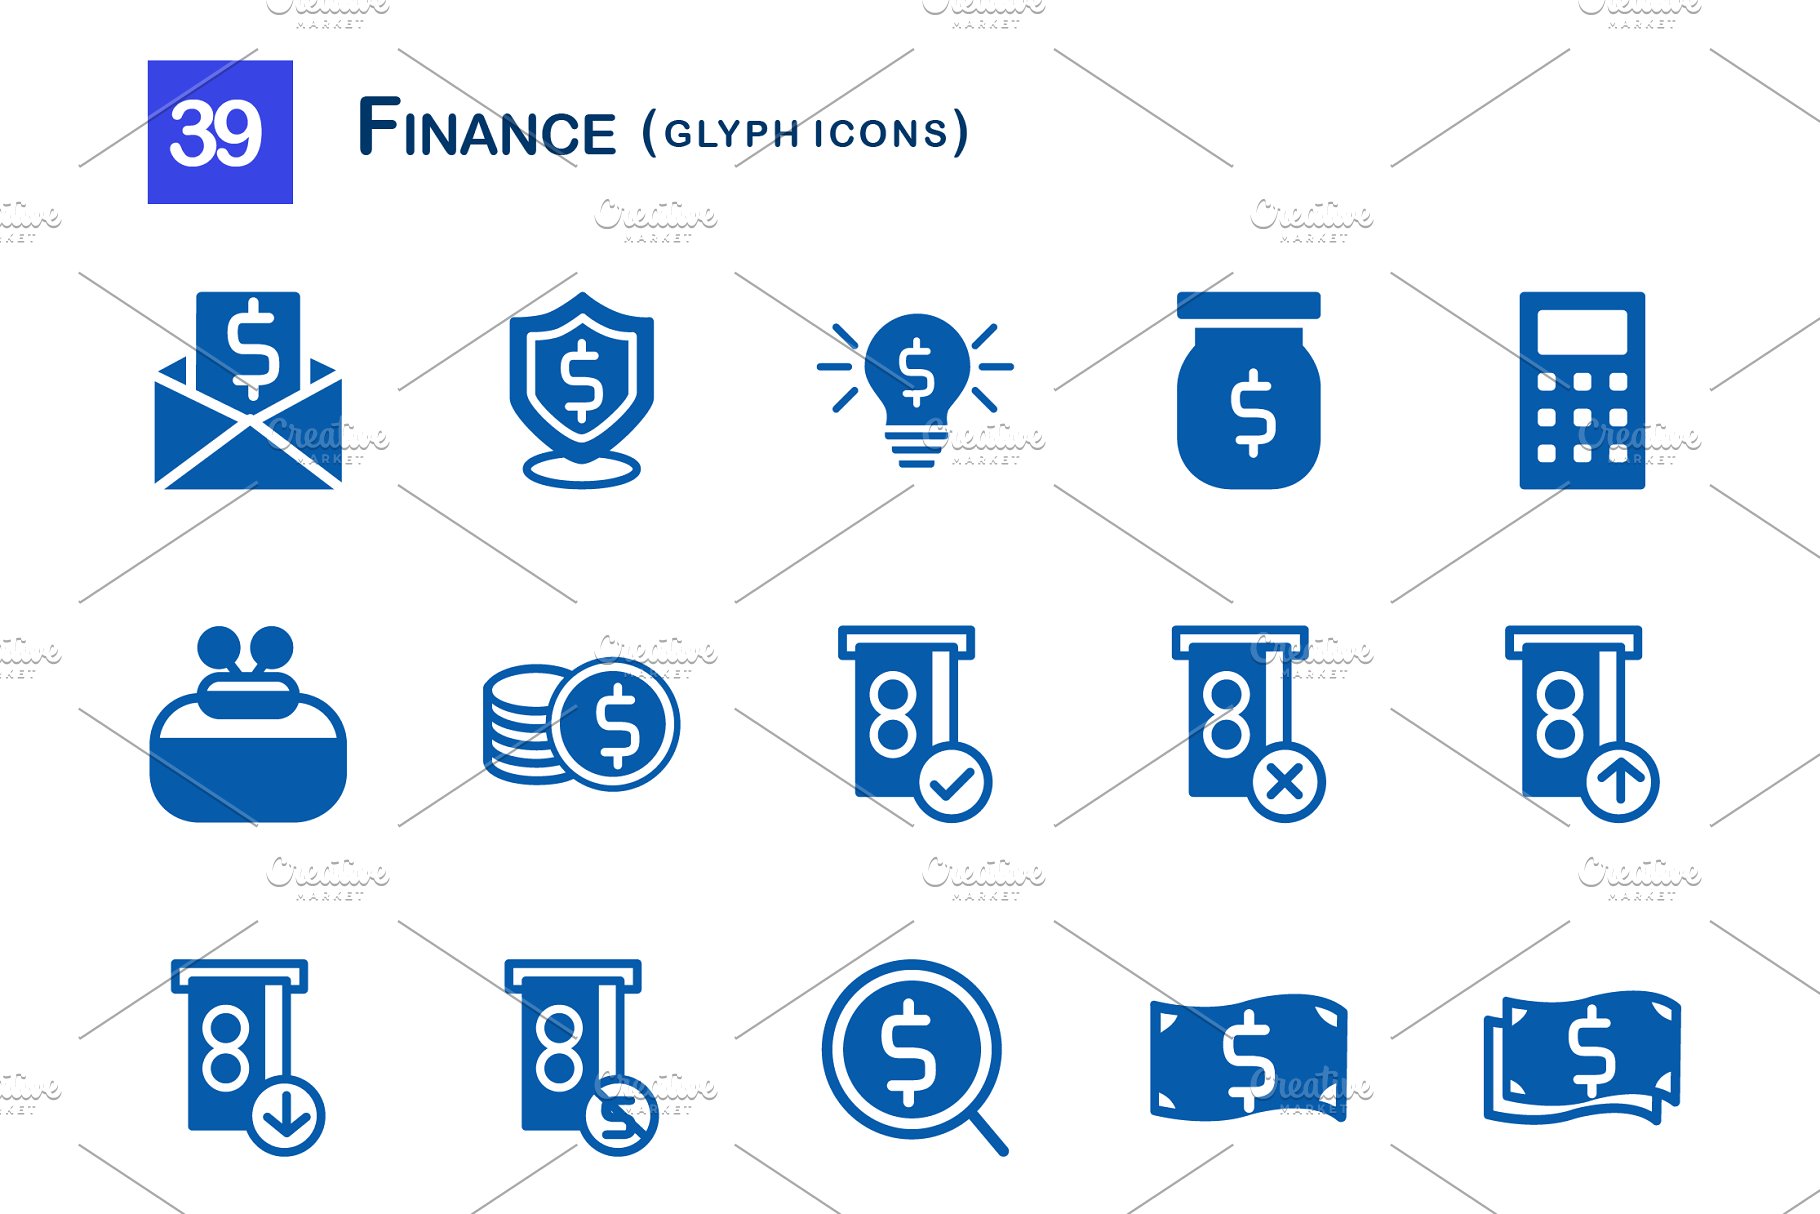 39个金融象形图标 39 Finance Glyph Icons插图(1)